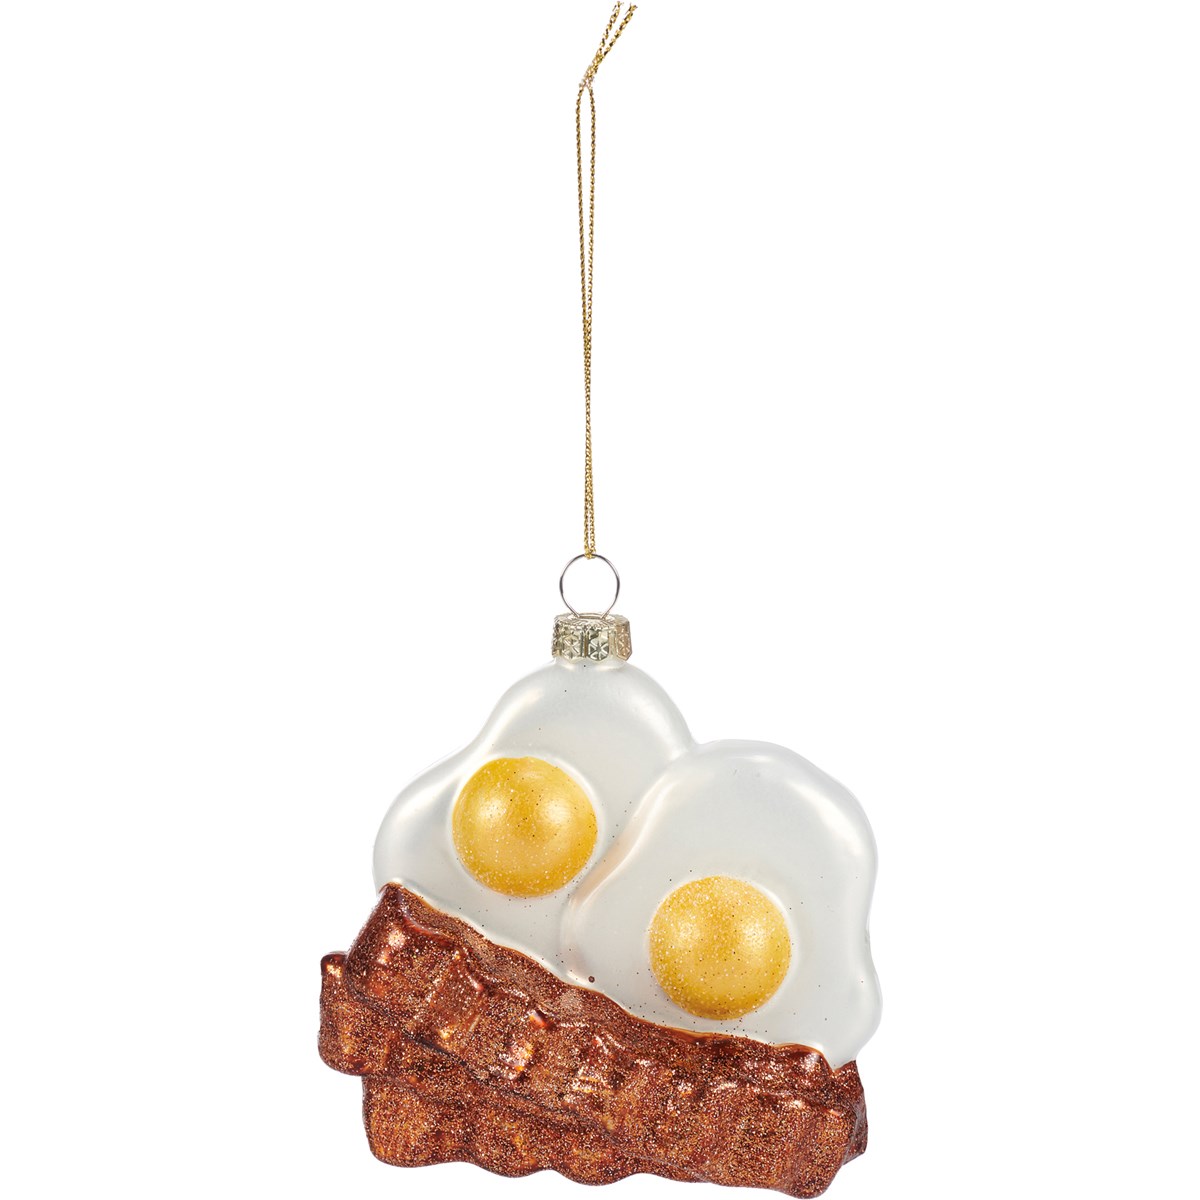 Breakfast Glass Ornament - Glass, Metal, Glitter